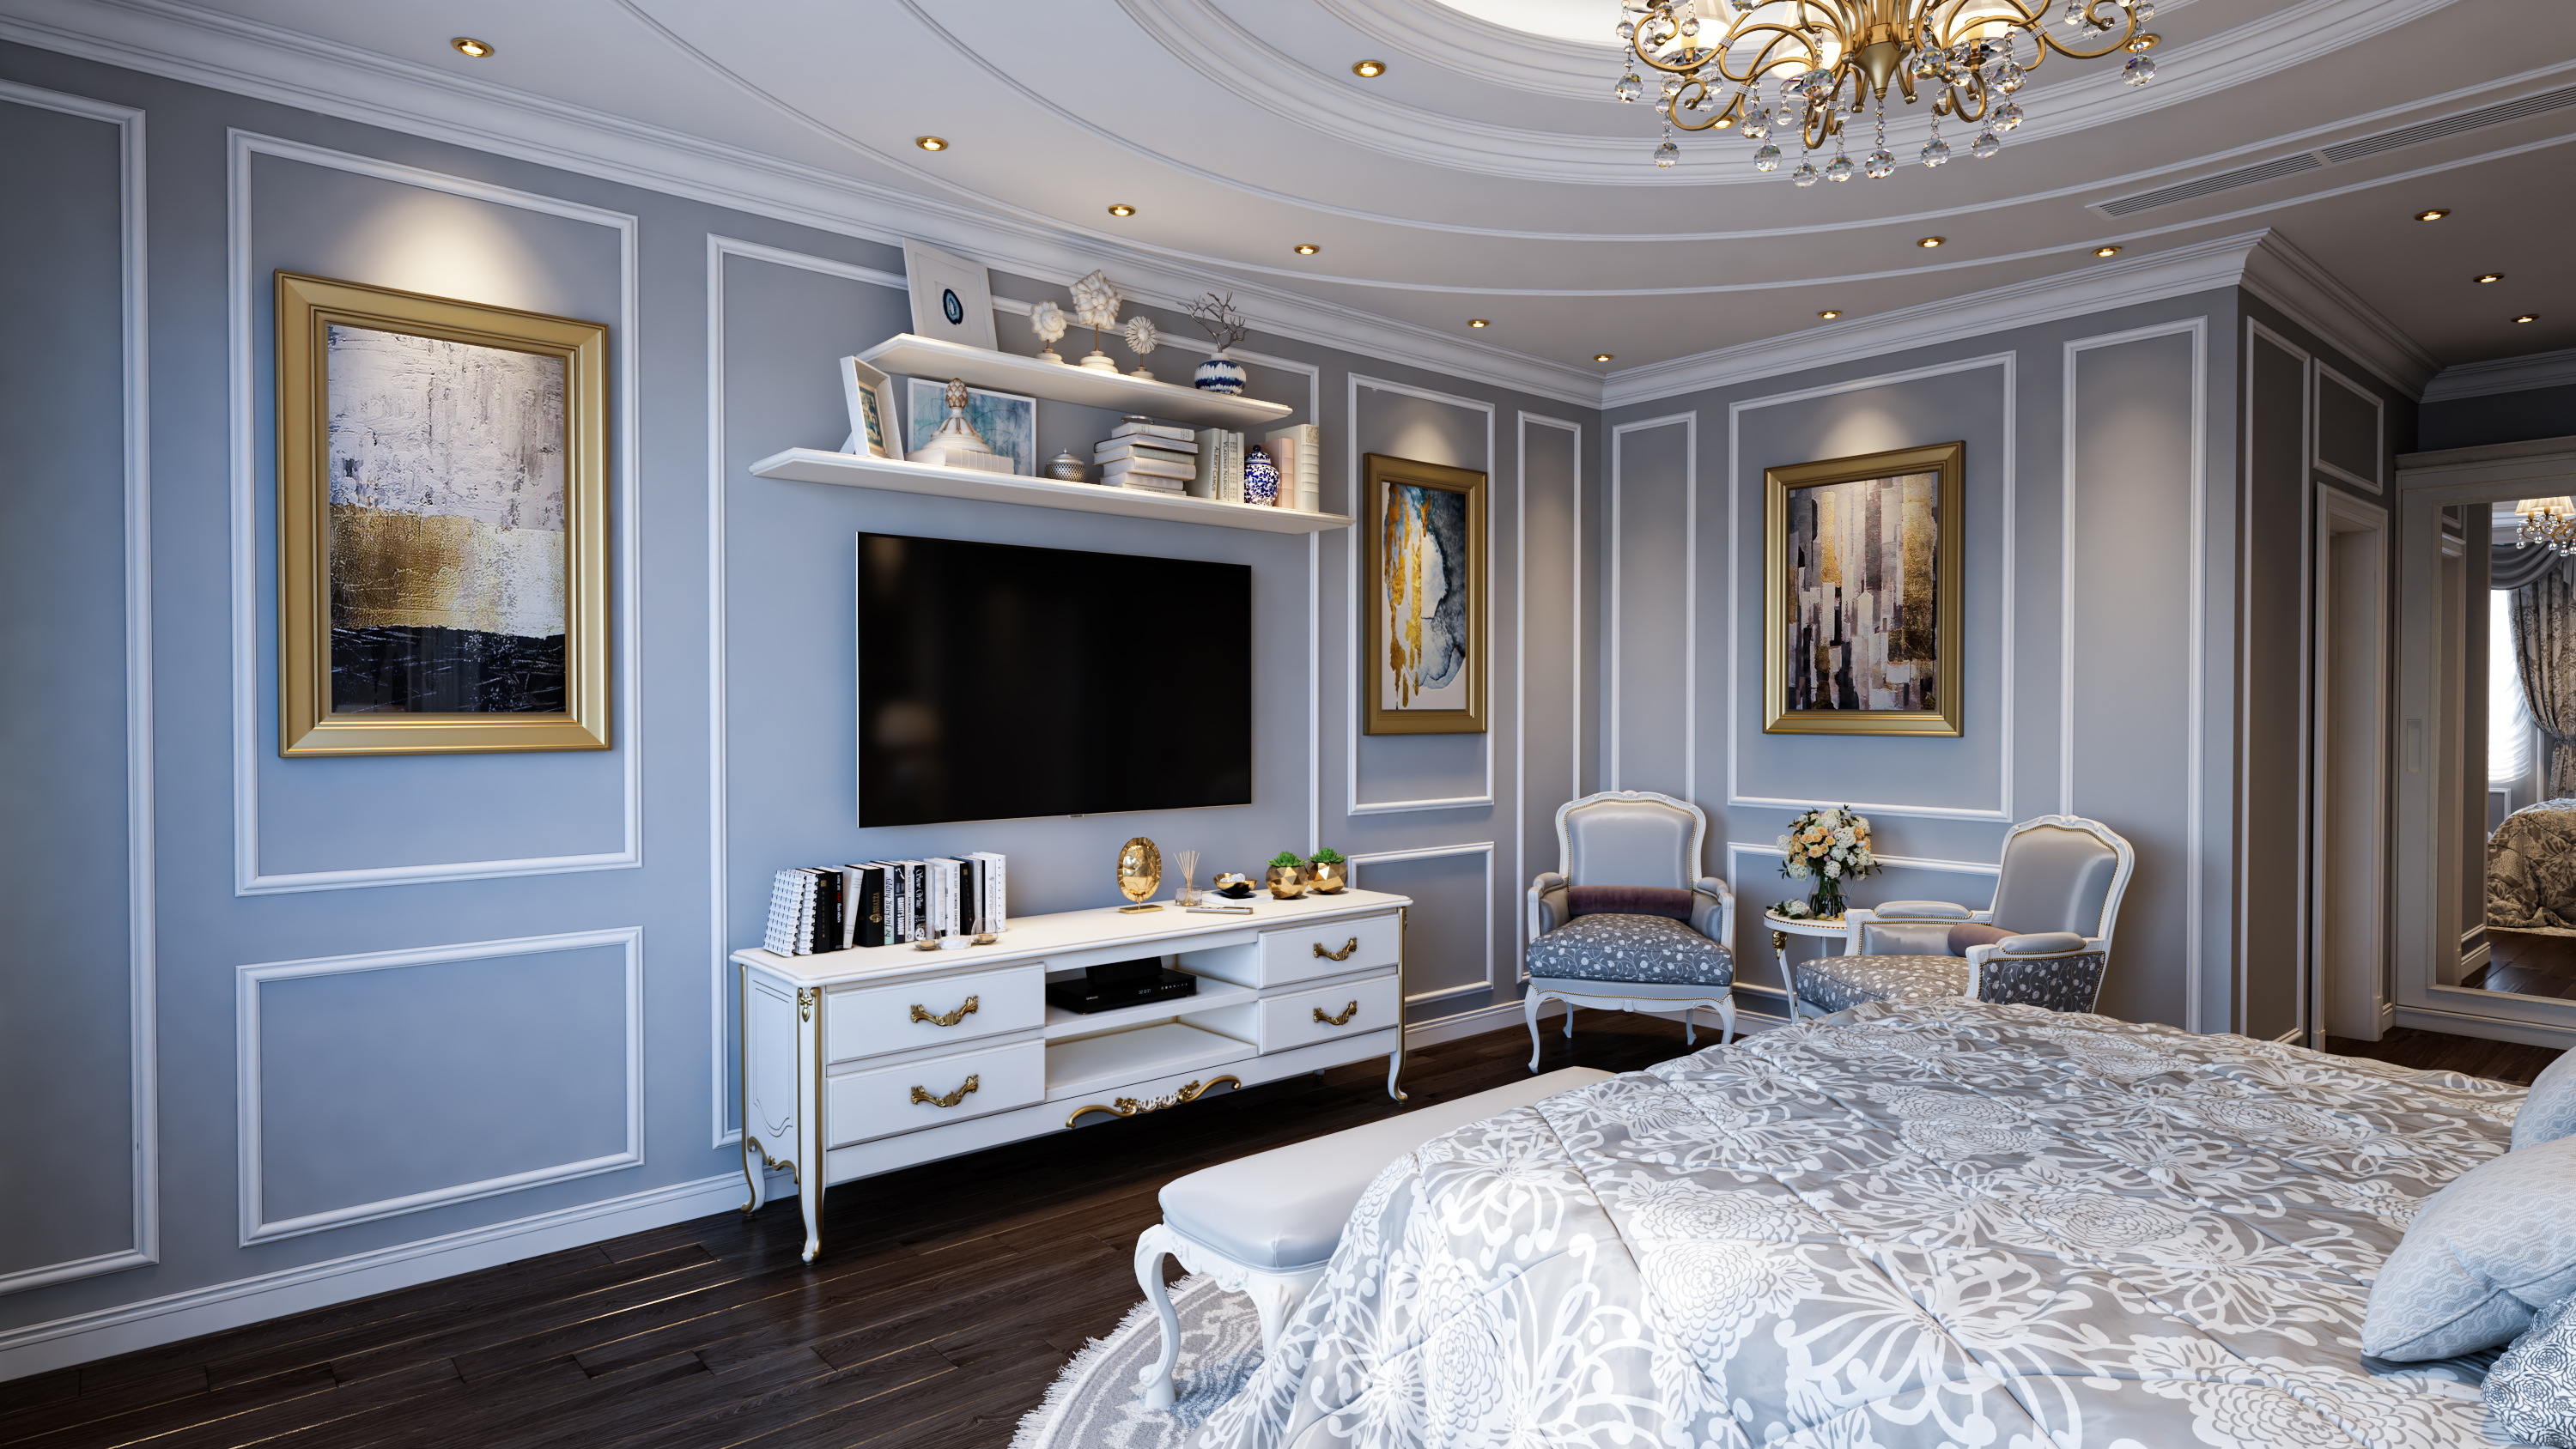 Chambre à coucher principale Gris et blanc dans 3d max vray 3.0 image